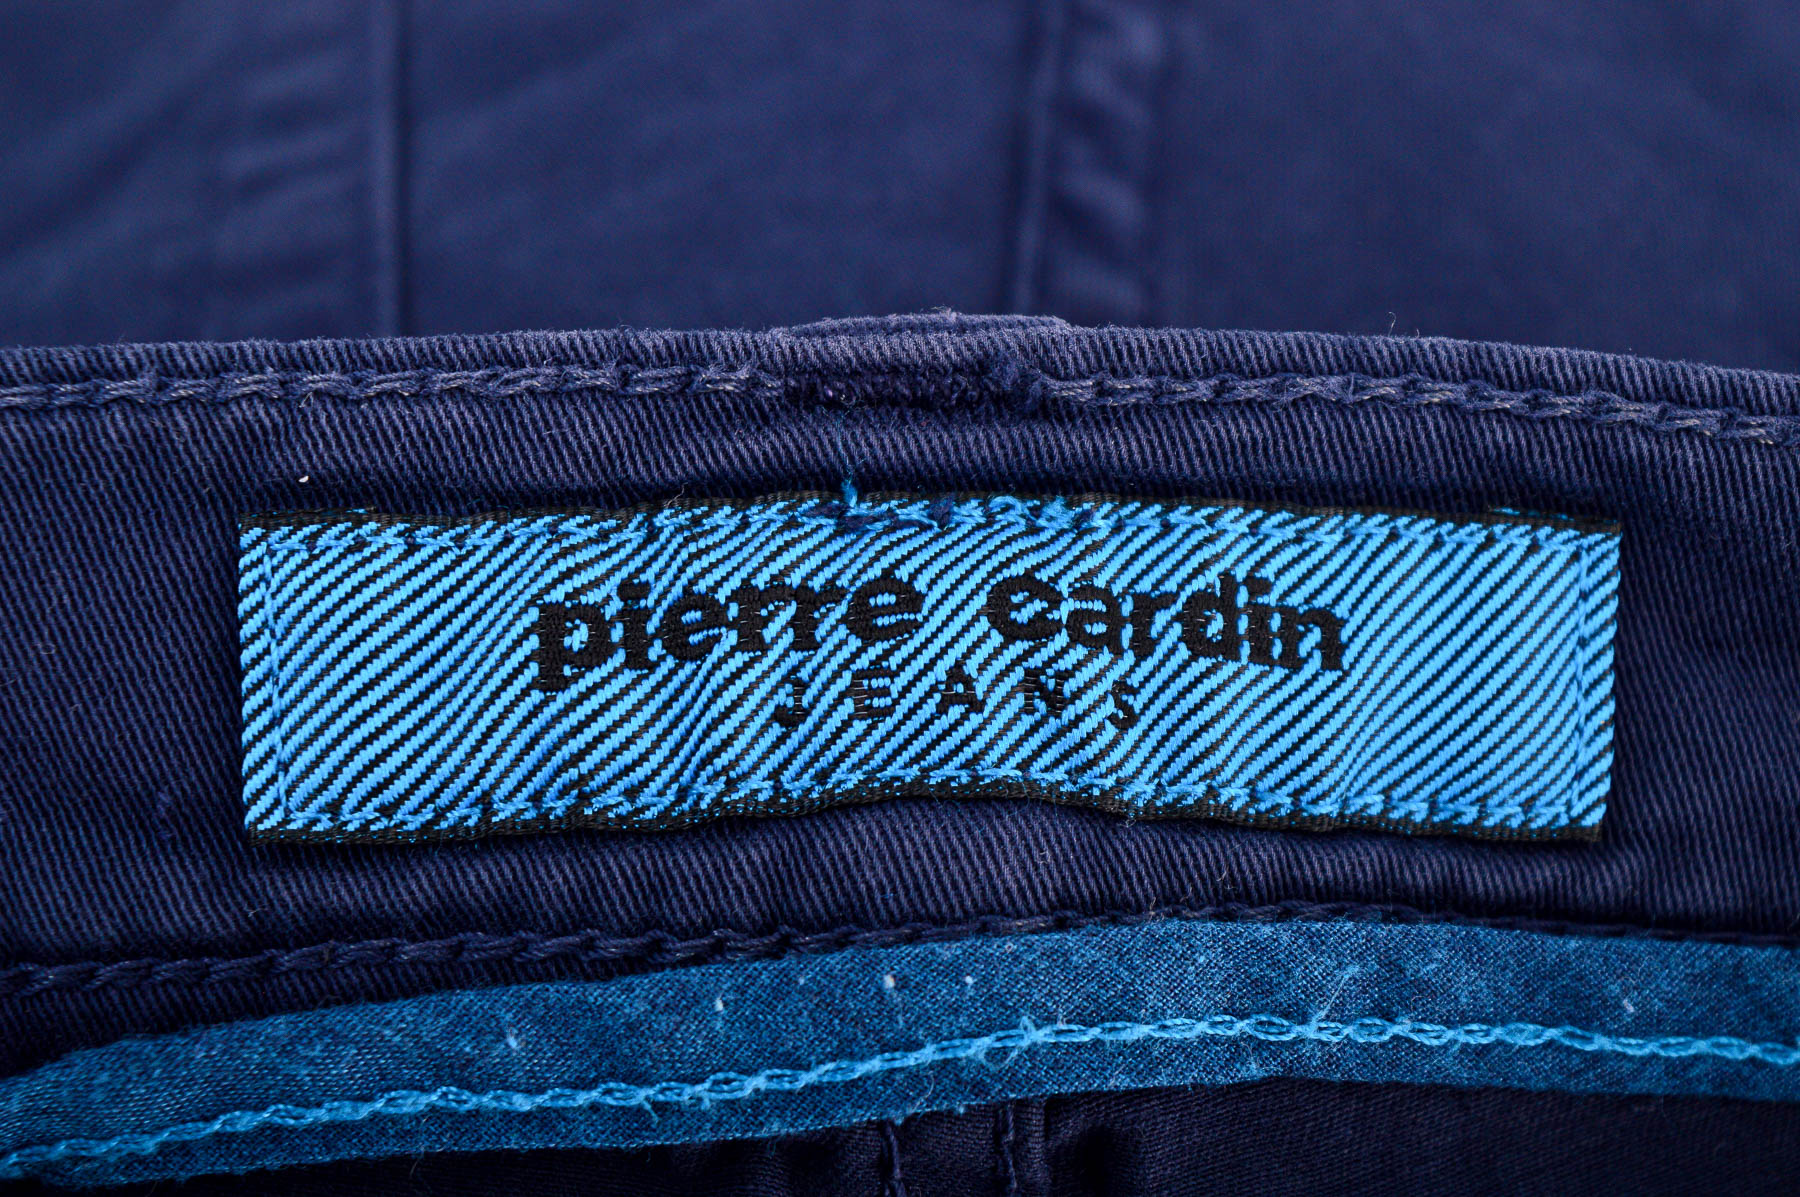 Ανδρικά παντελόνια - Pierre Cardin - 2